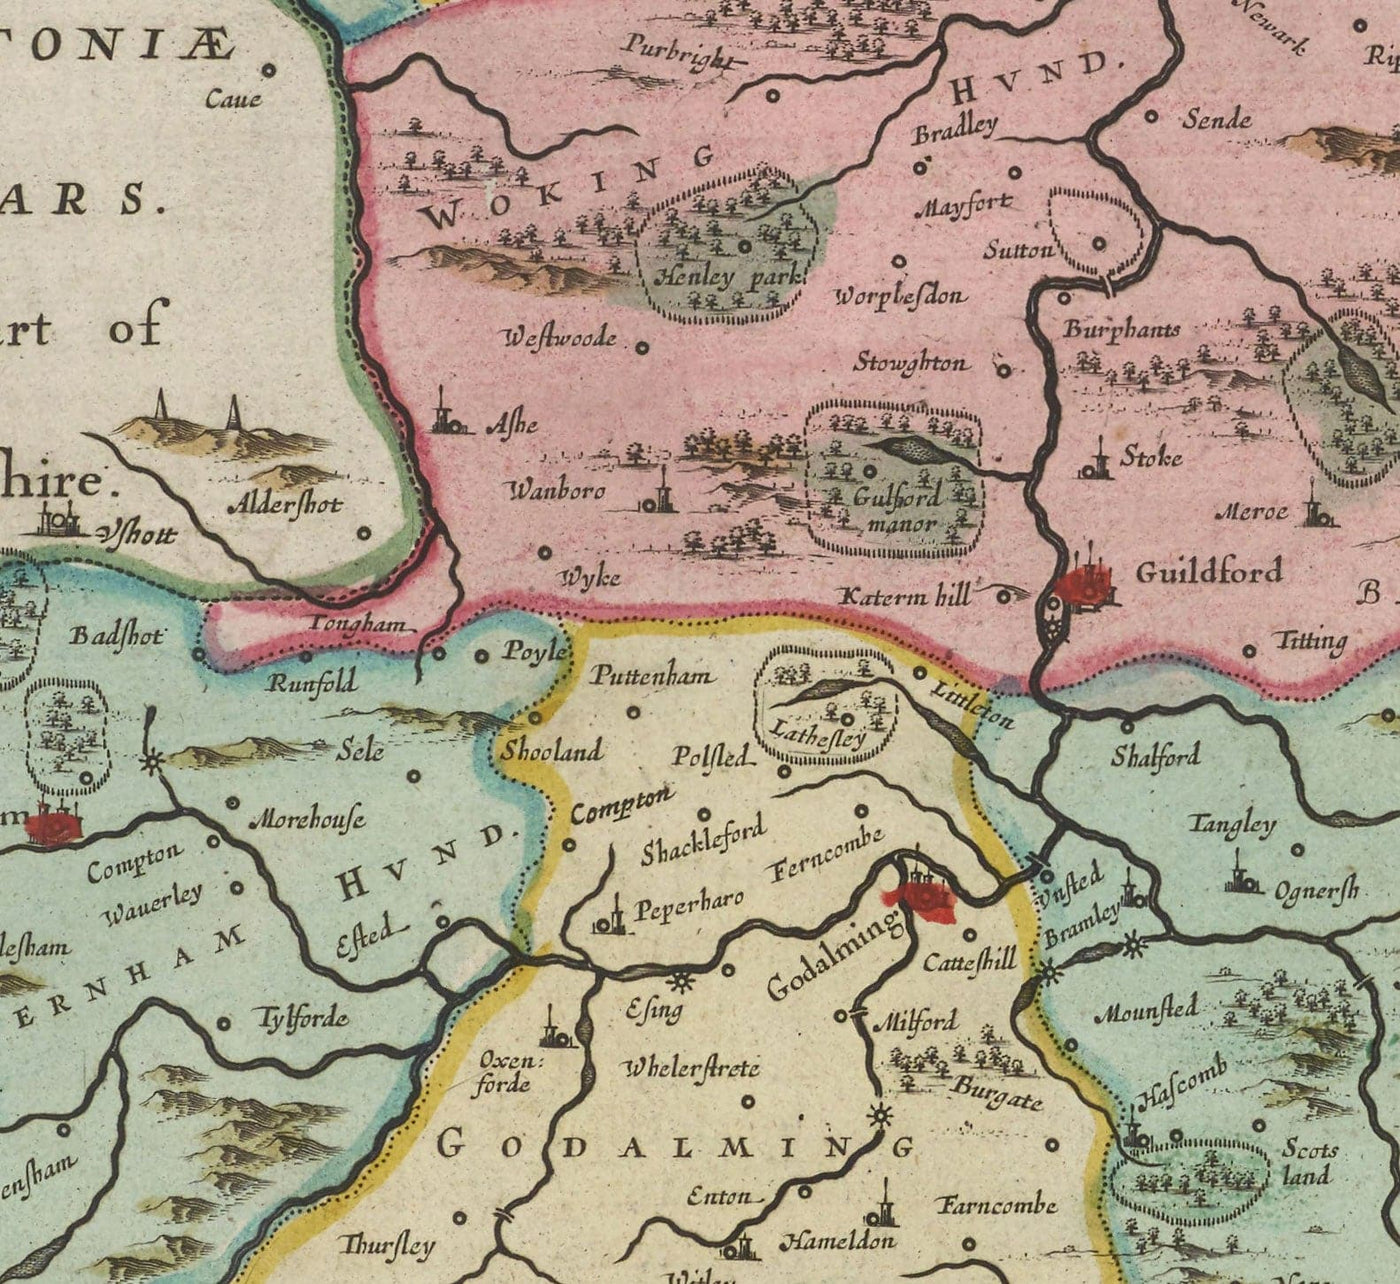 Alte Karte von Surrey 1665 von Joan Blaeu - Woking, Guildford, Croydon, Richmond, Kingston, Greitrig